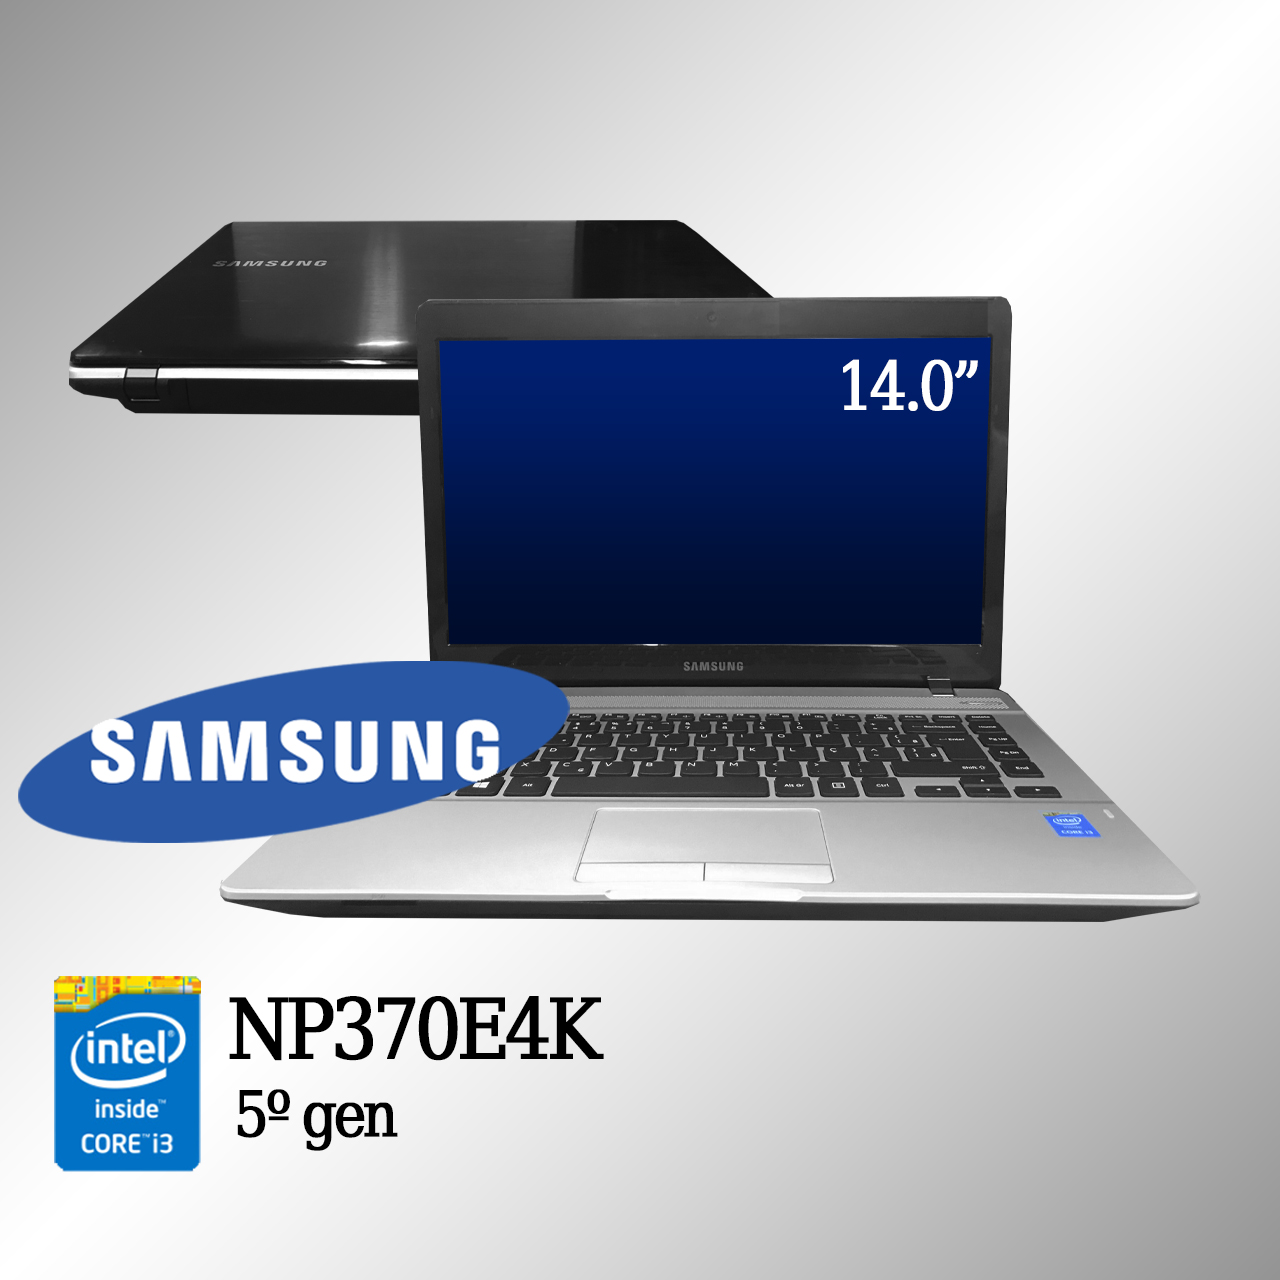 Laptop Samsung NP370E4K Intel i3 de 5a. Geração 4GB de memória e 1TB Disco